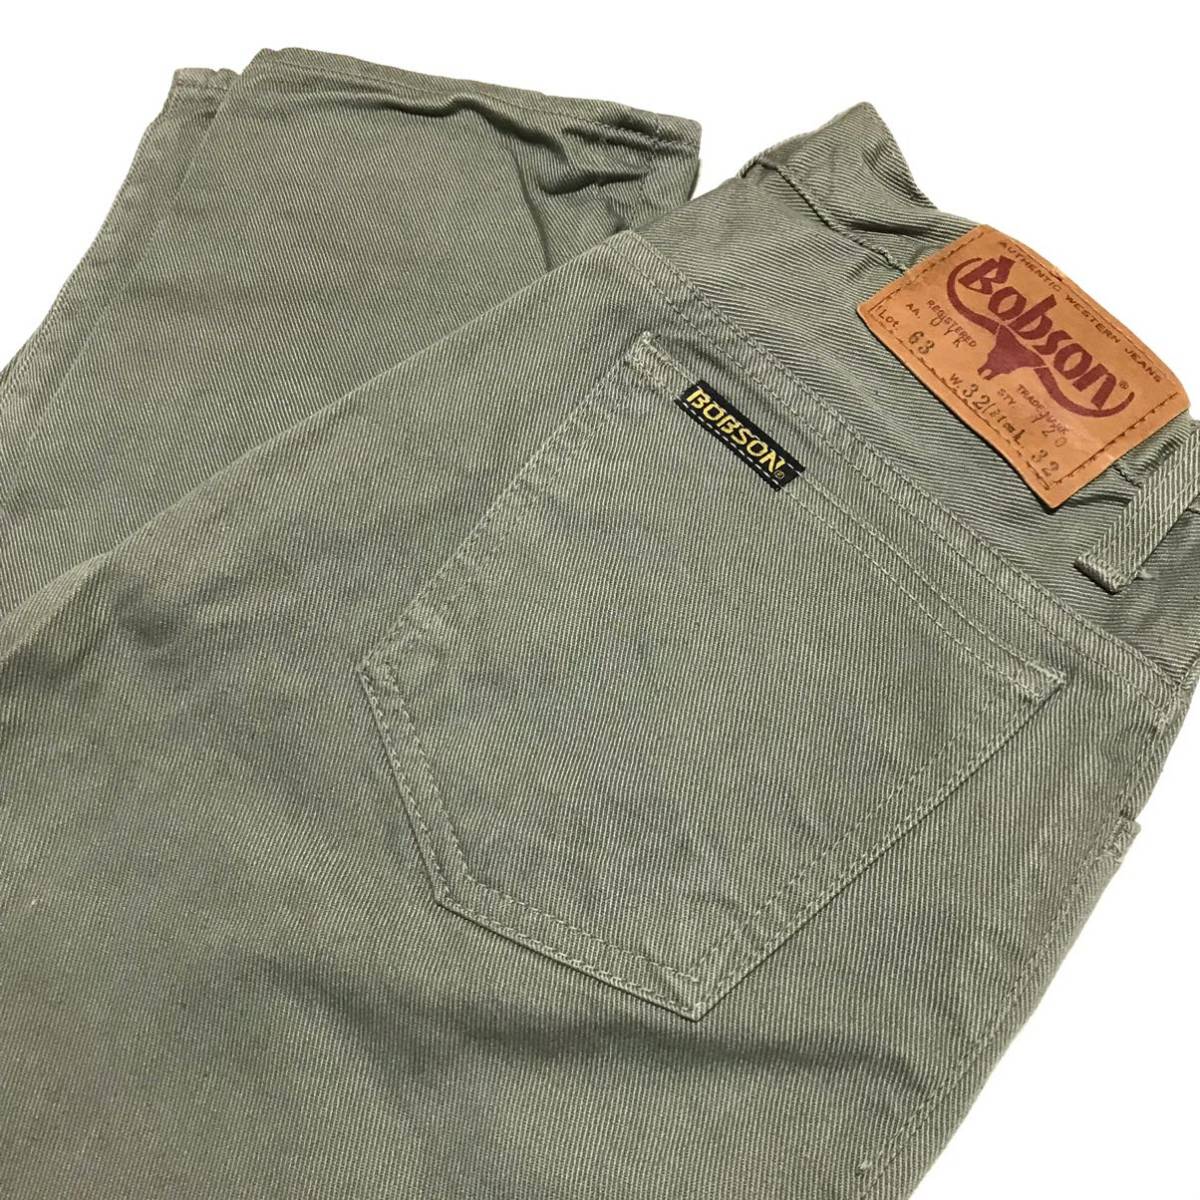 [ неиспользуемый товар ]70s 80s BOBSON 720 Bobson цвет джинсы W32/81. серый Vintage тонкий Denim брюки сделано в Японии Okayama снят с производства 7